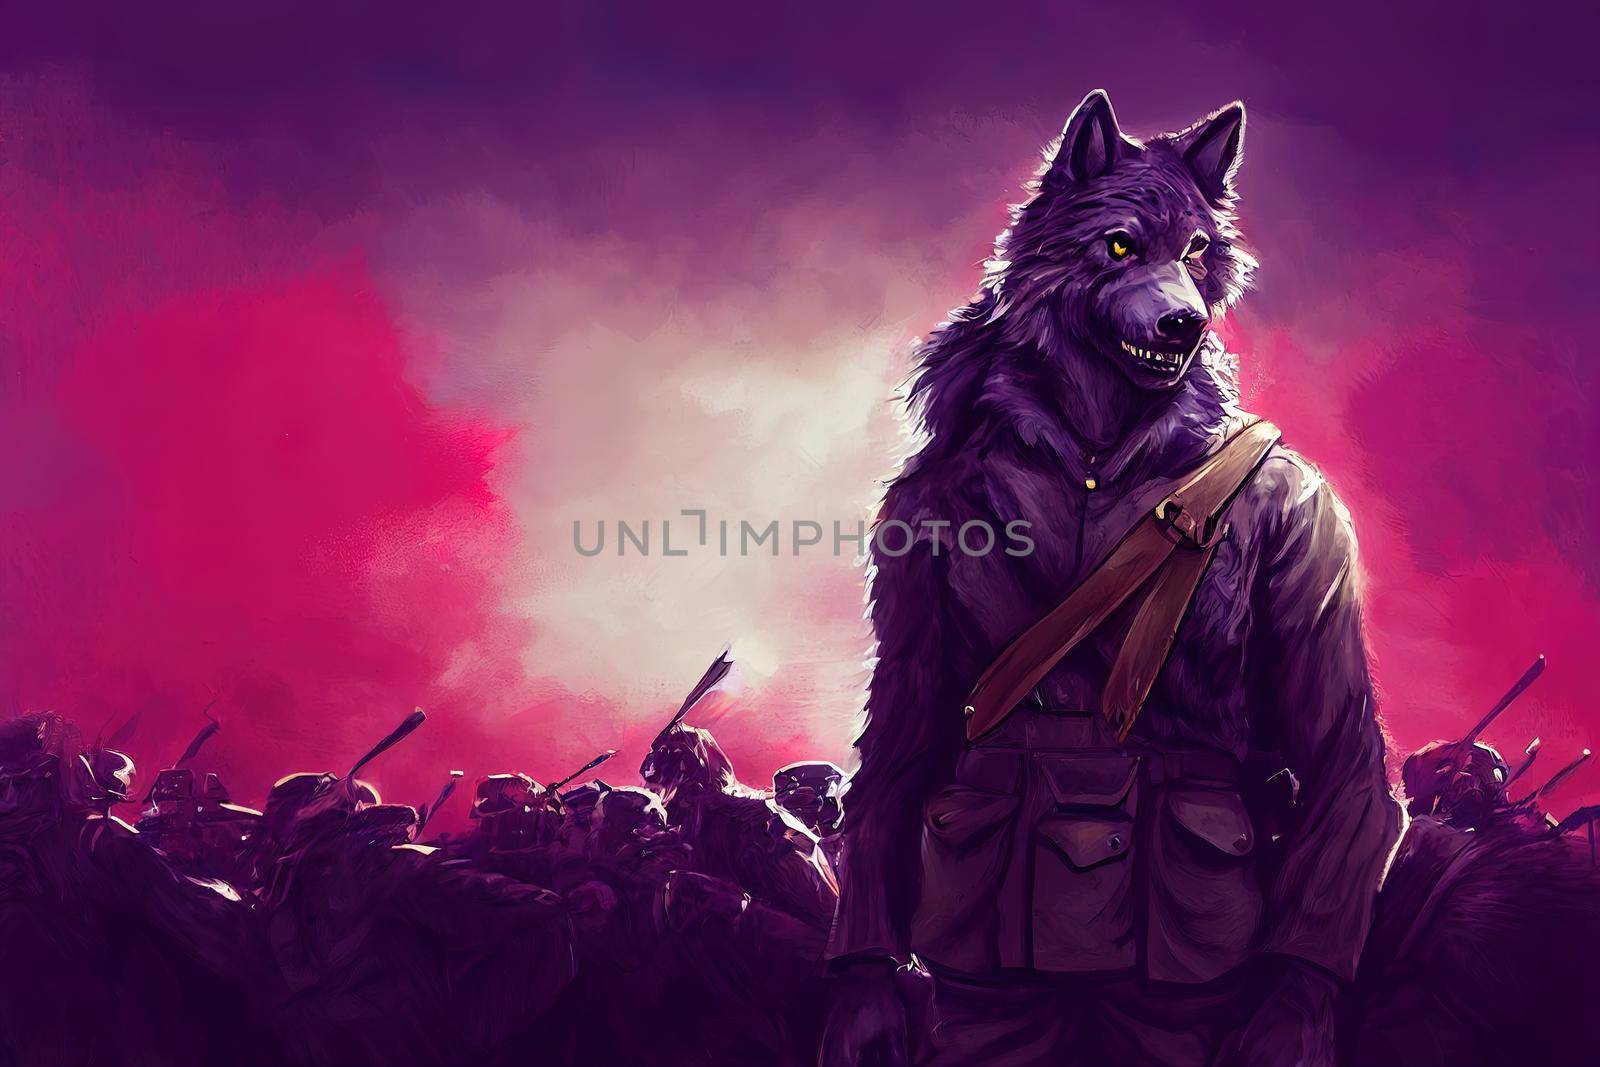 the werewolf wearing ww1 army uniform by 2ragon